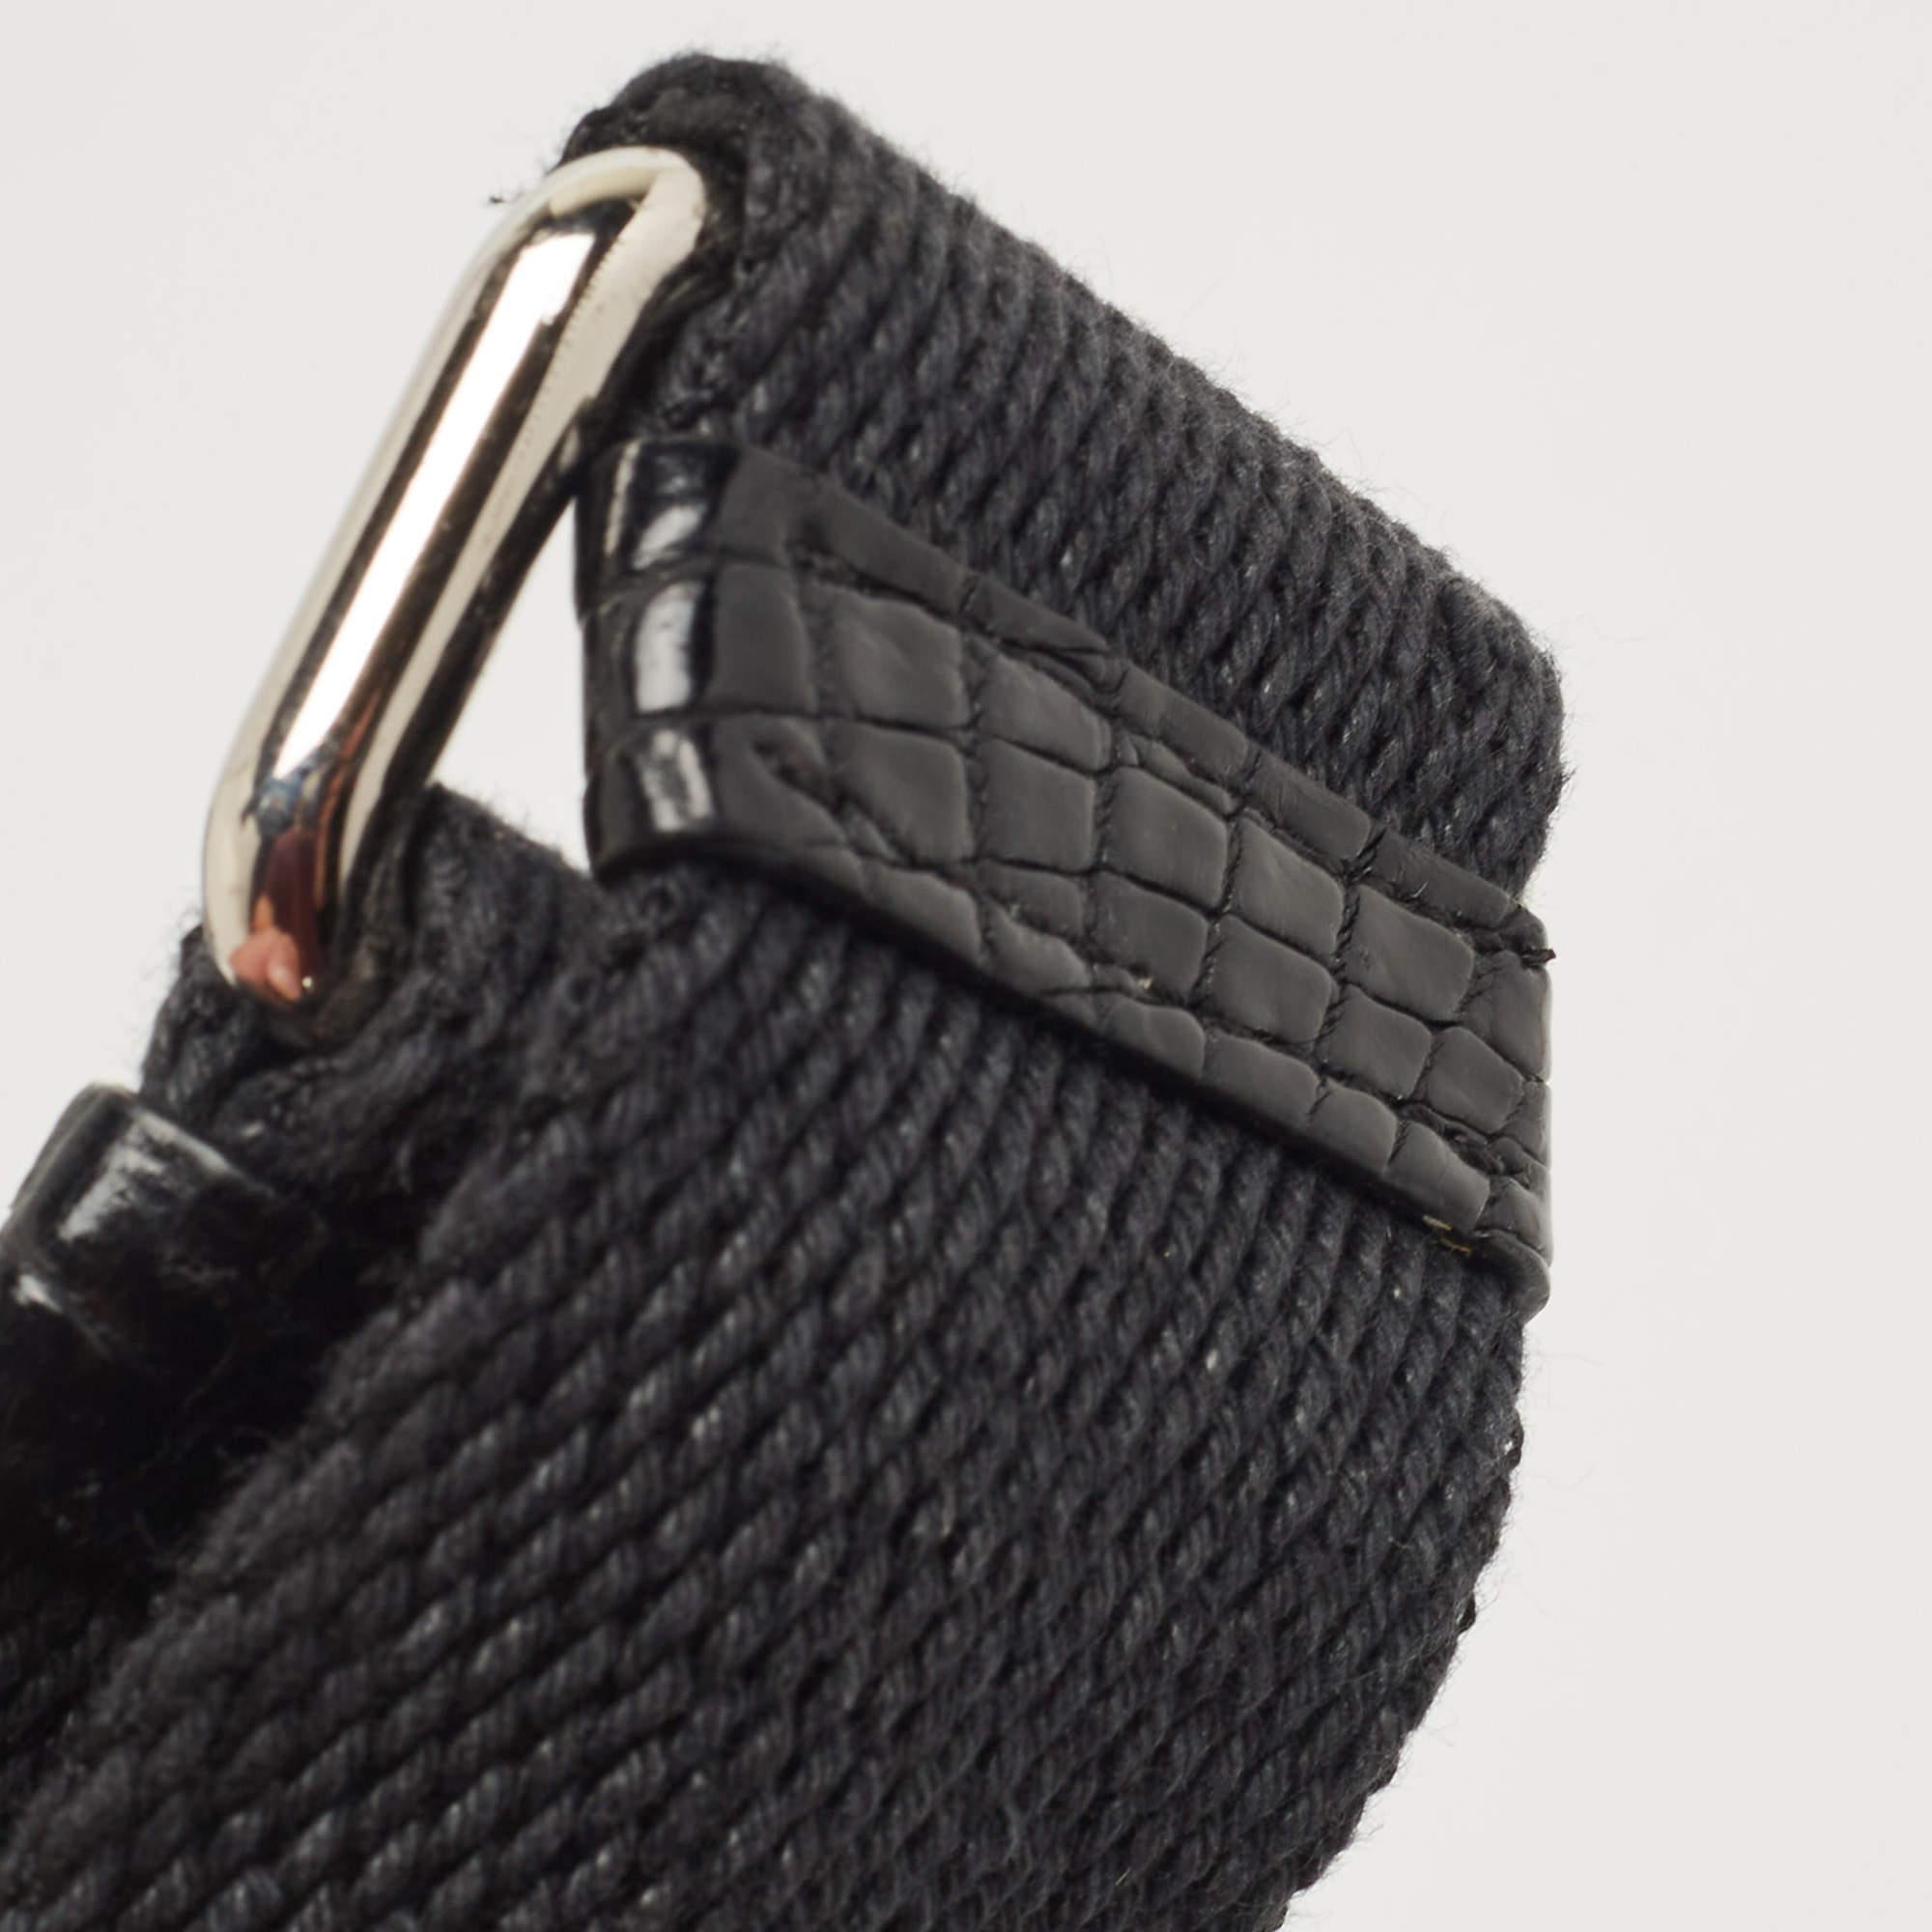 Dolce & Gabbana Black/Silver Croc Embossed and Leather Camera Case Shoulder Bag 15